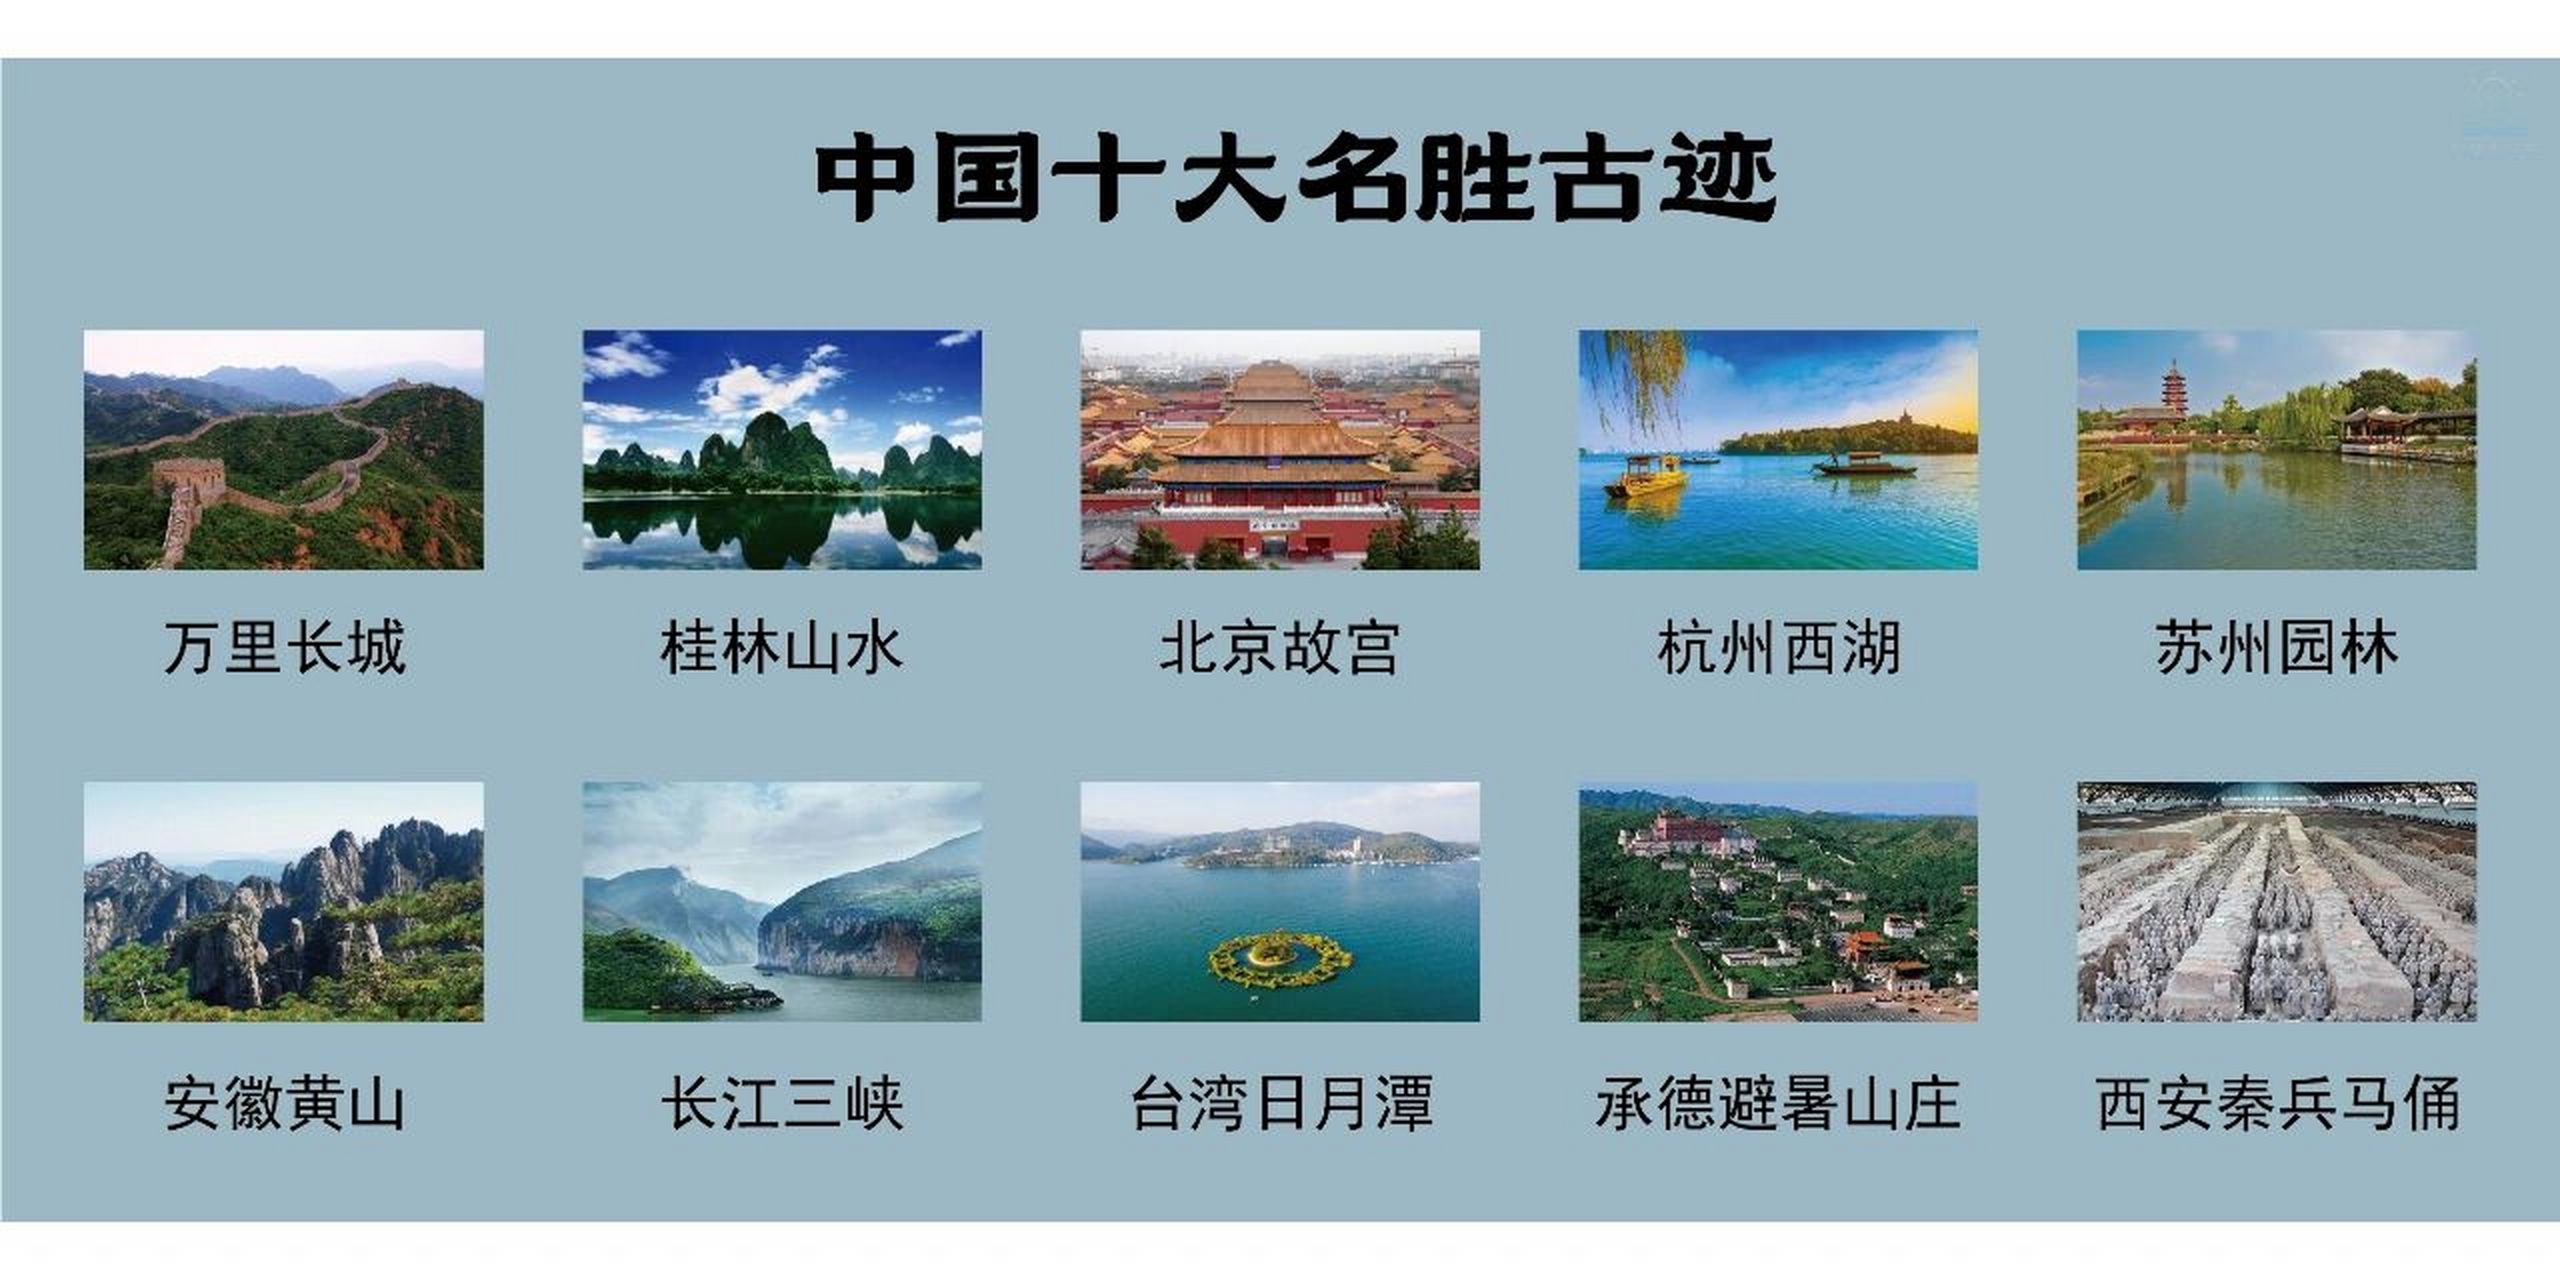 中国著名的景点及介绍图片